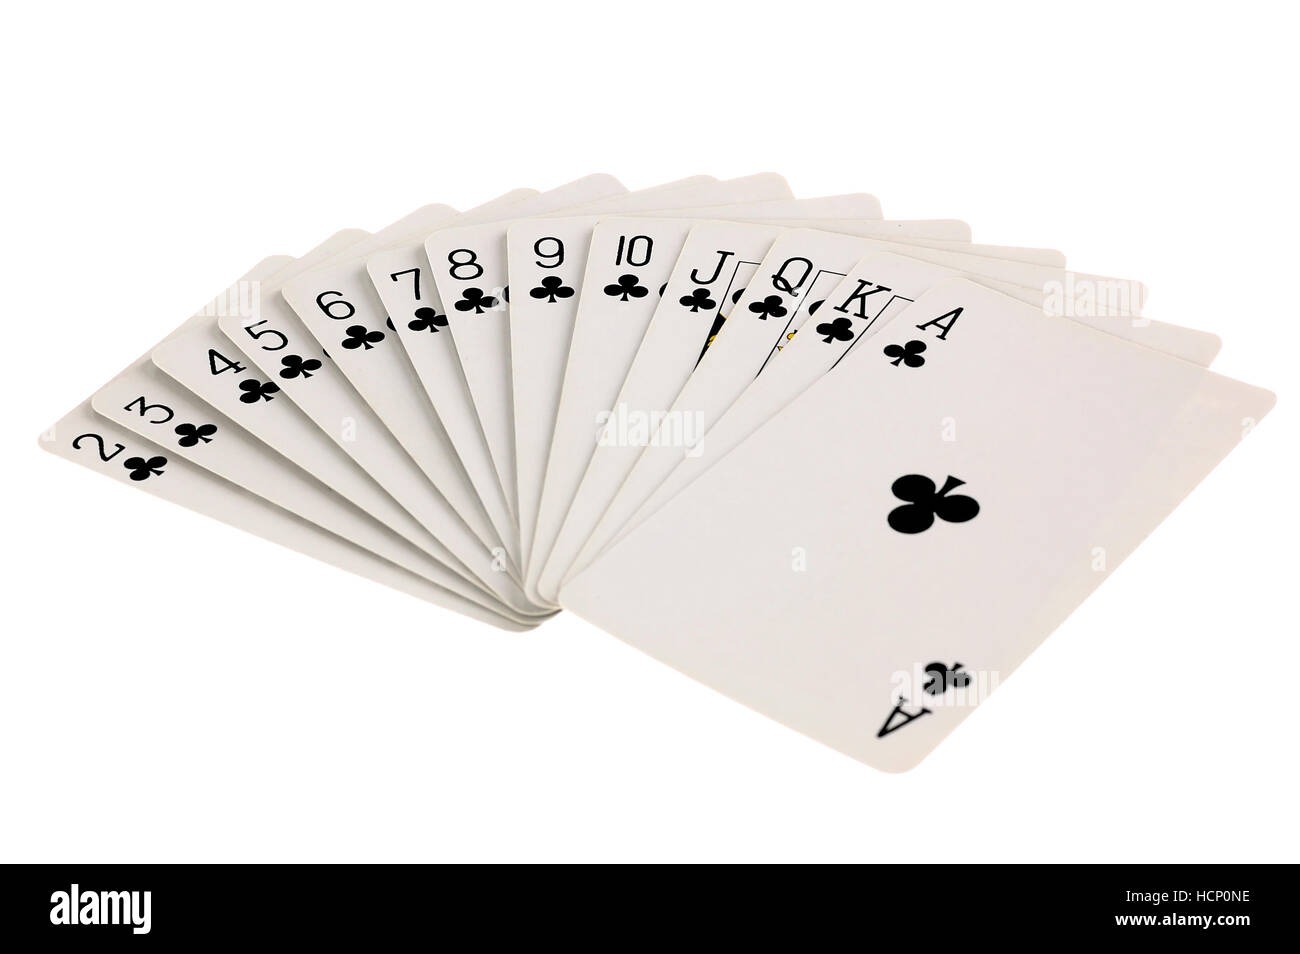 Ensemble complet de club répondre cartes à jouer isolé sur fond blanc Banque D'Images